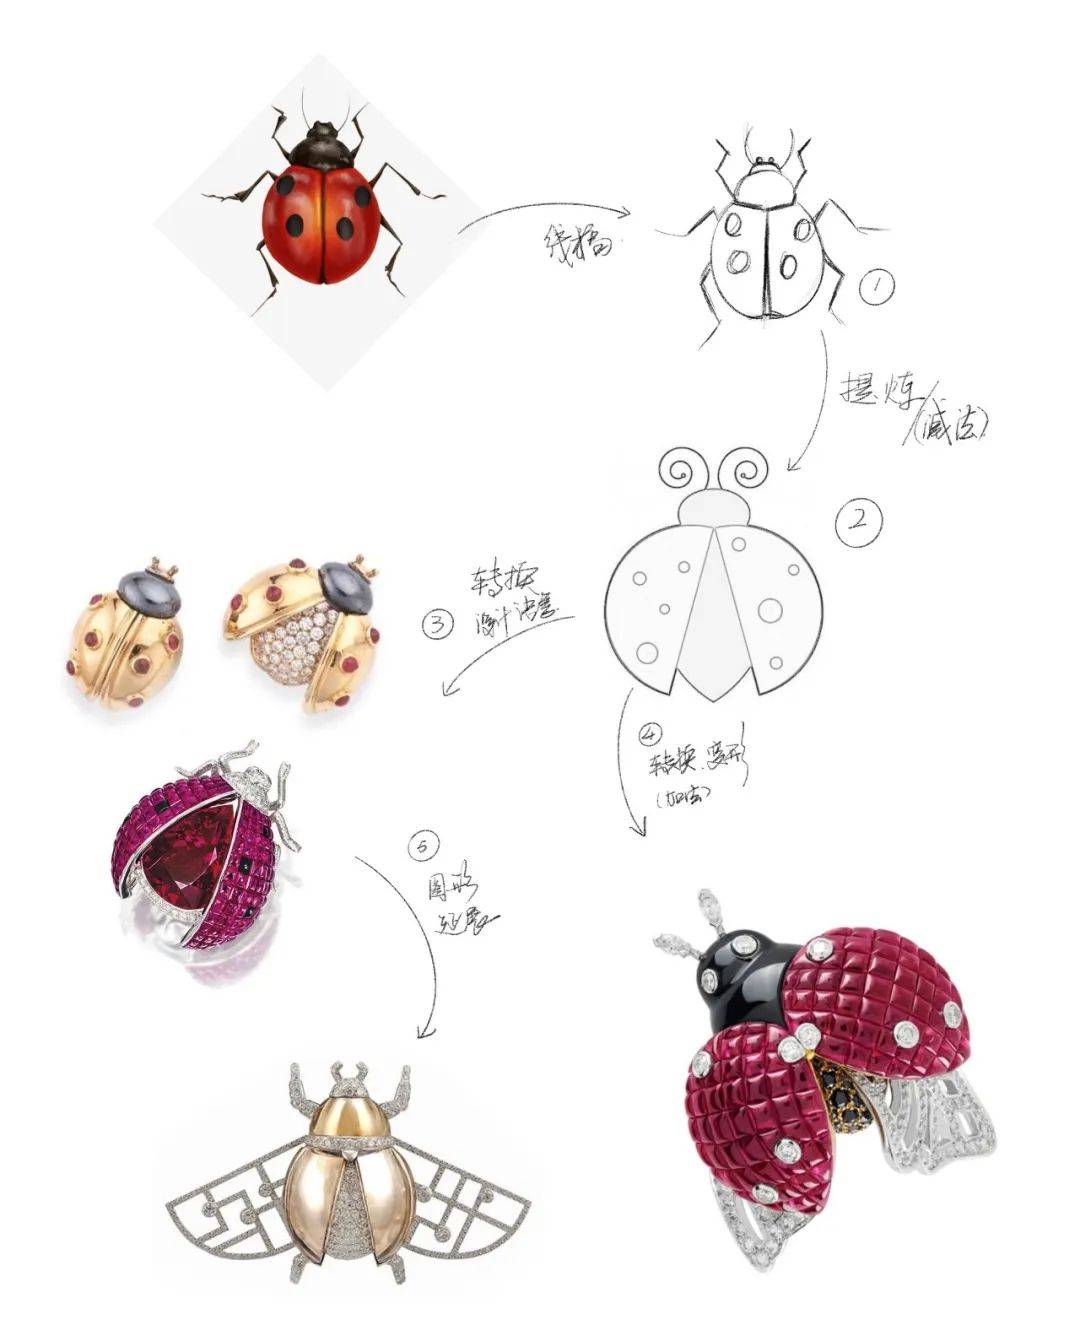 高级珠宝昆虫主题类产品设计语言转换示意